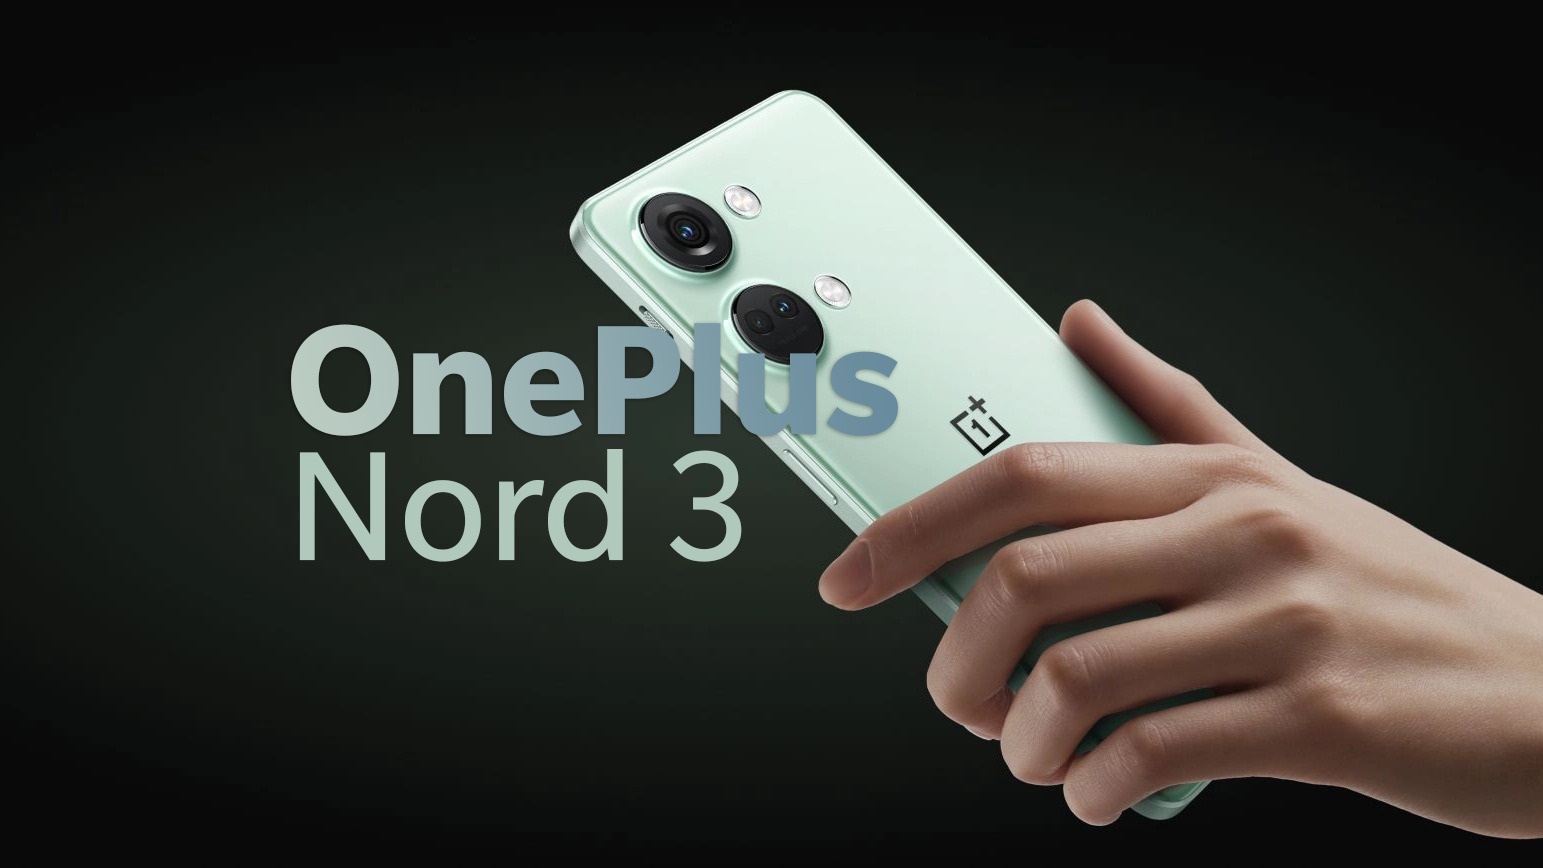 هاتف OnePlus Nord 3 ينطلق بشاشة تدعم استجابة فائقة السرعة في اللمس